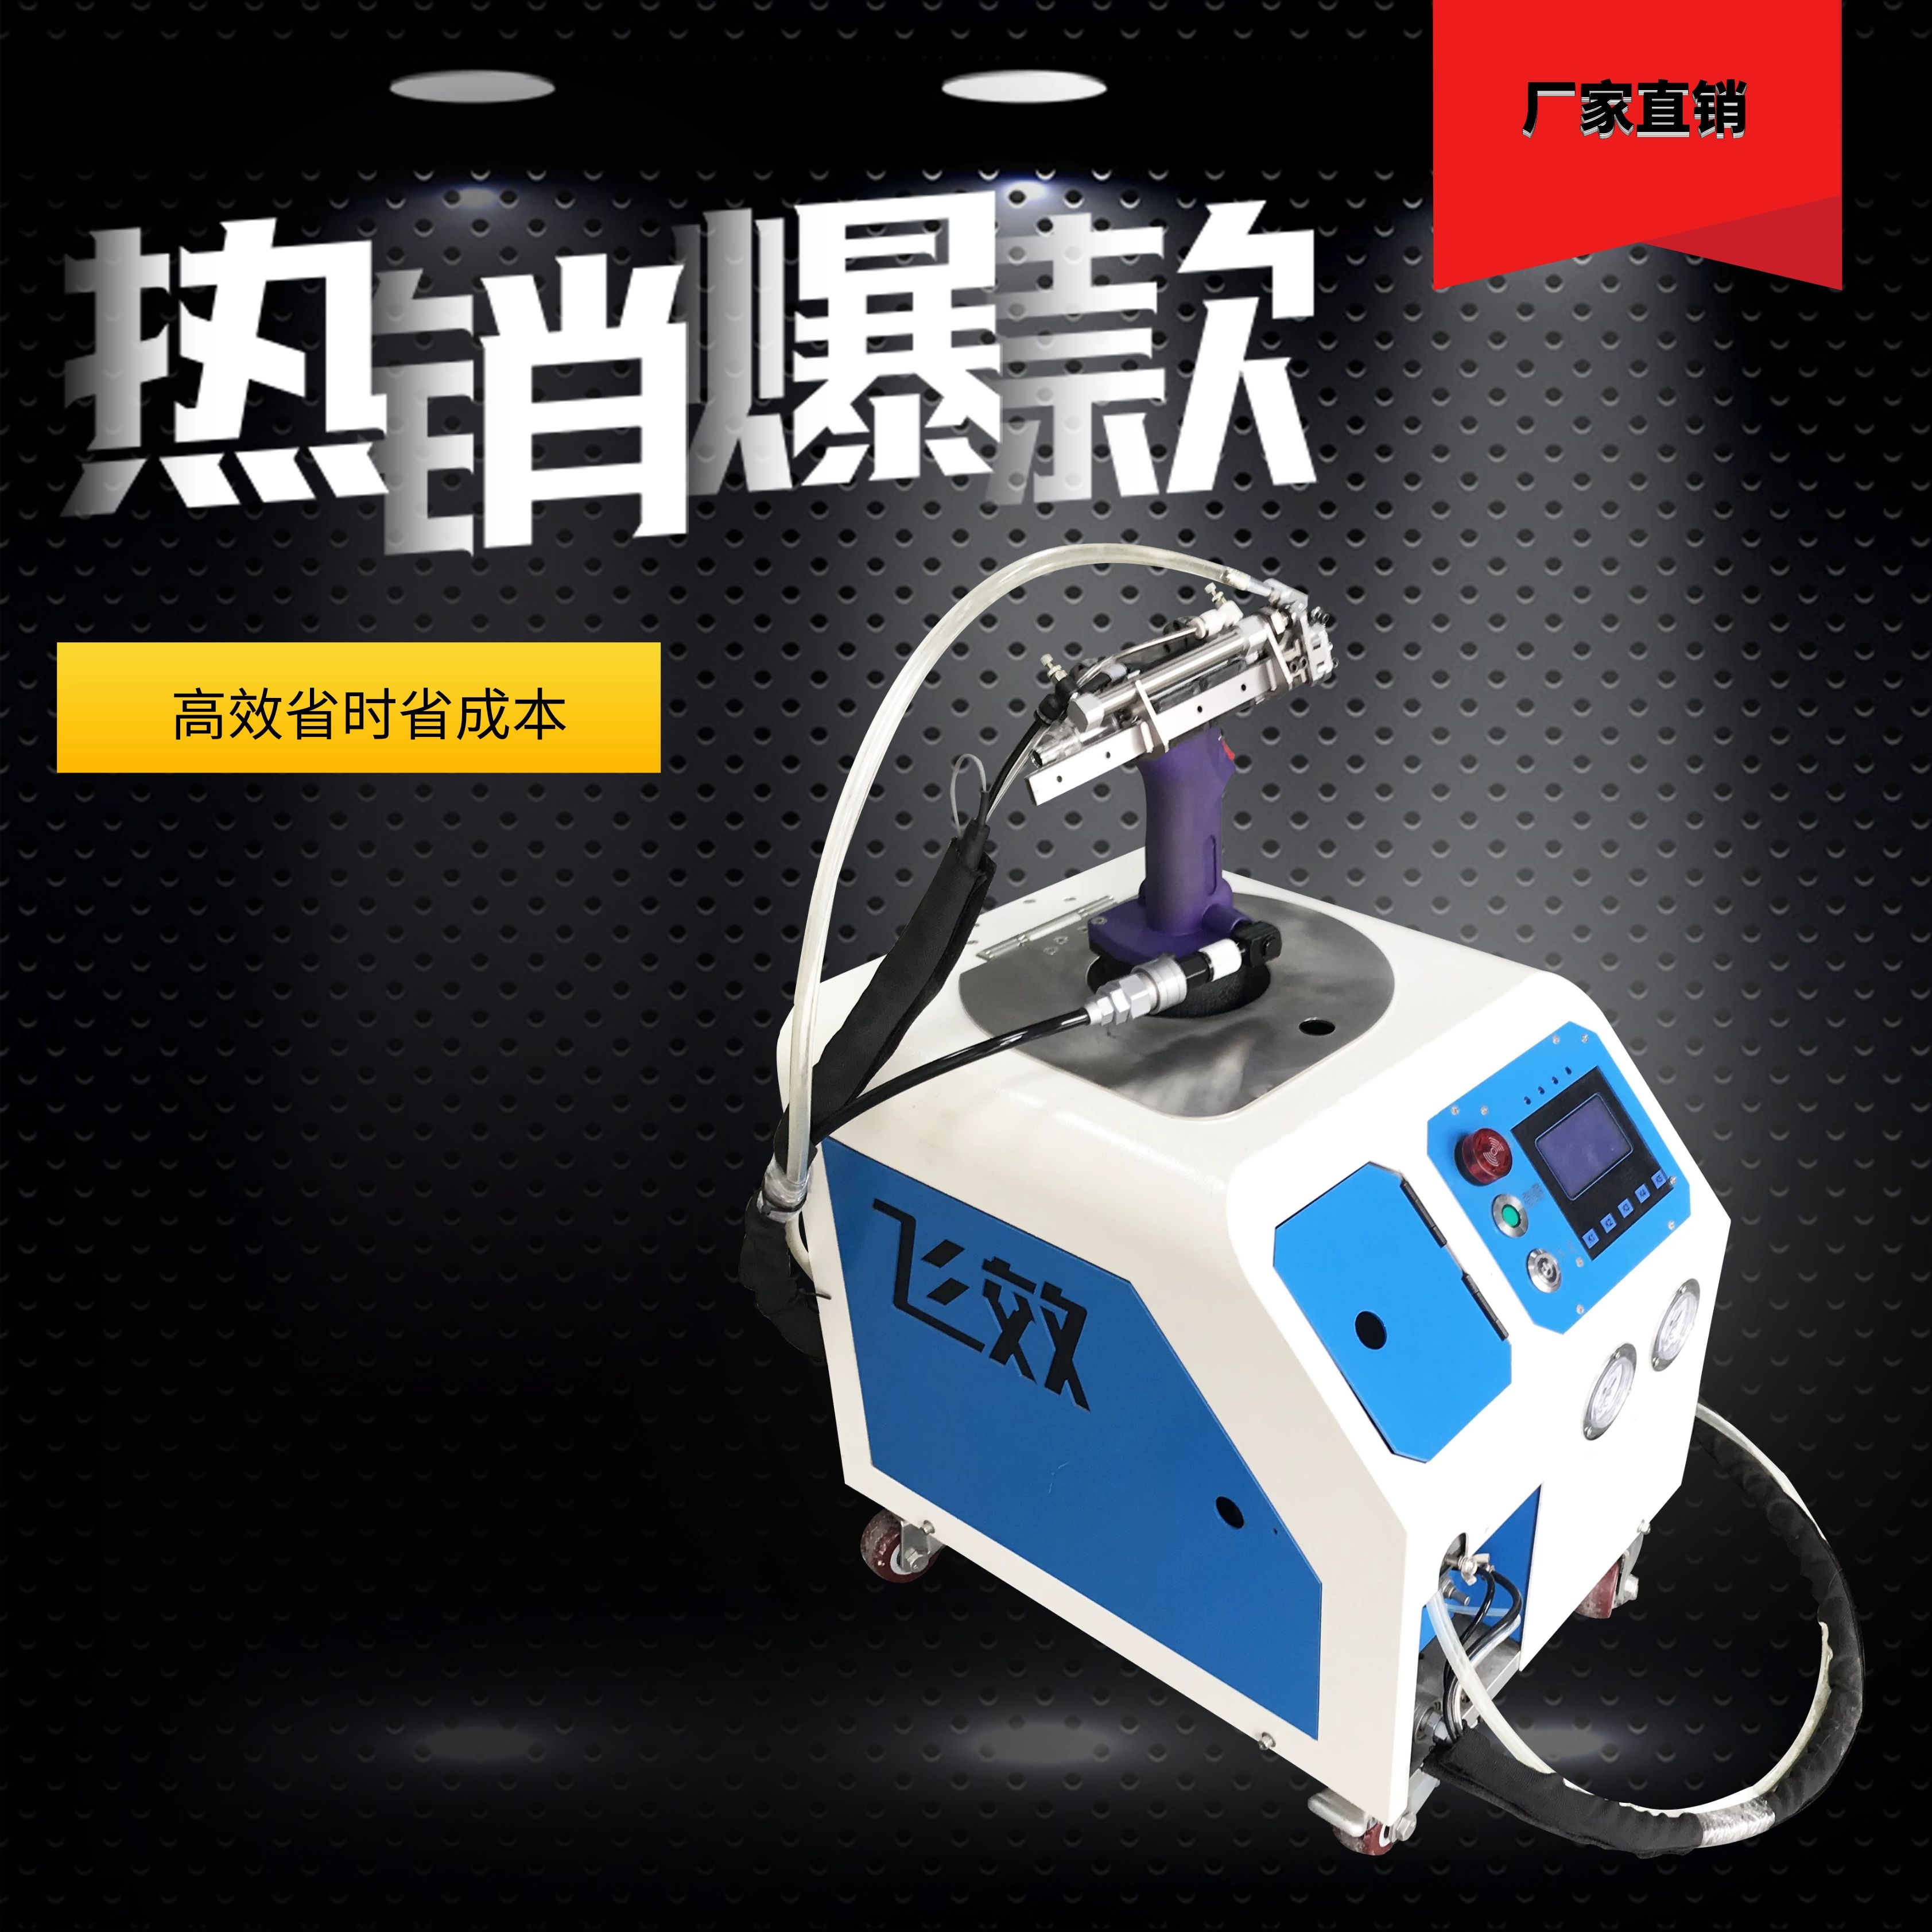 上海自动抽芯拉钉机报价-东莞市飞效智能科技有限公司